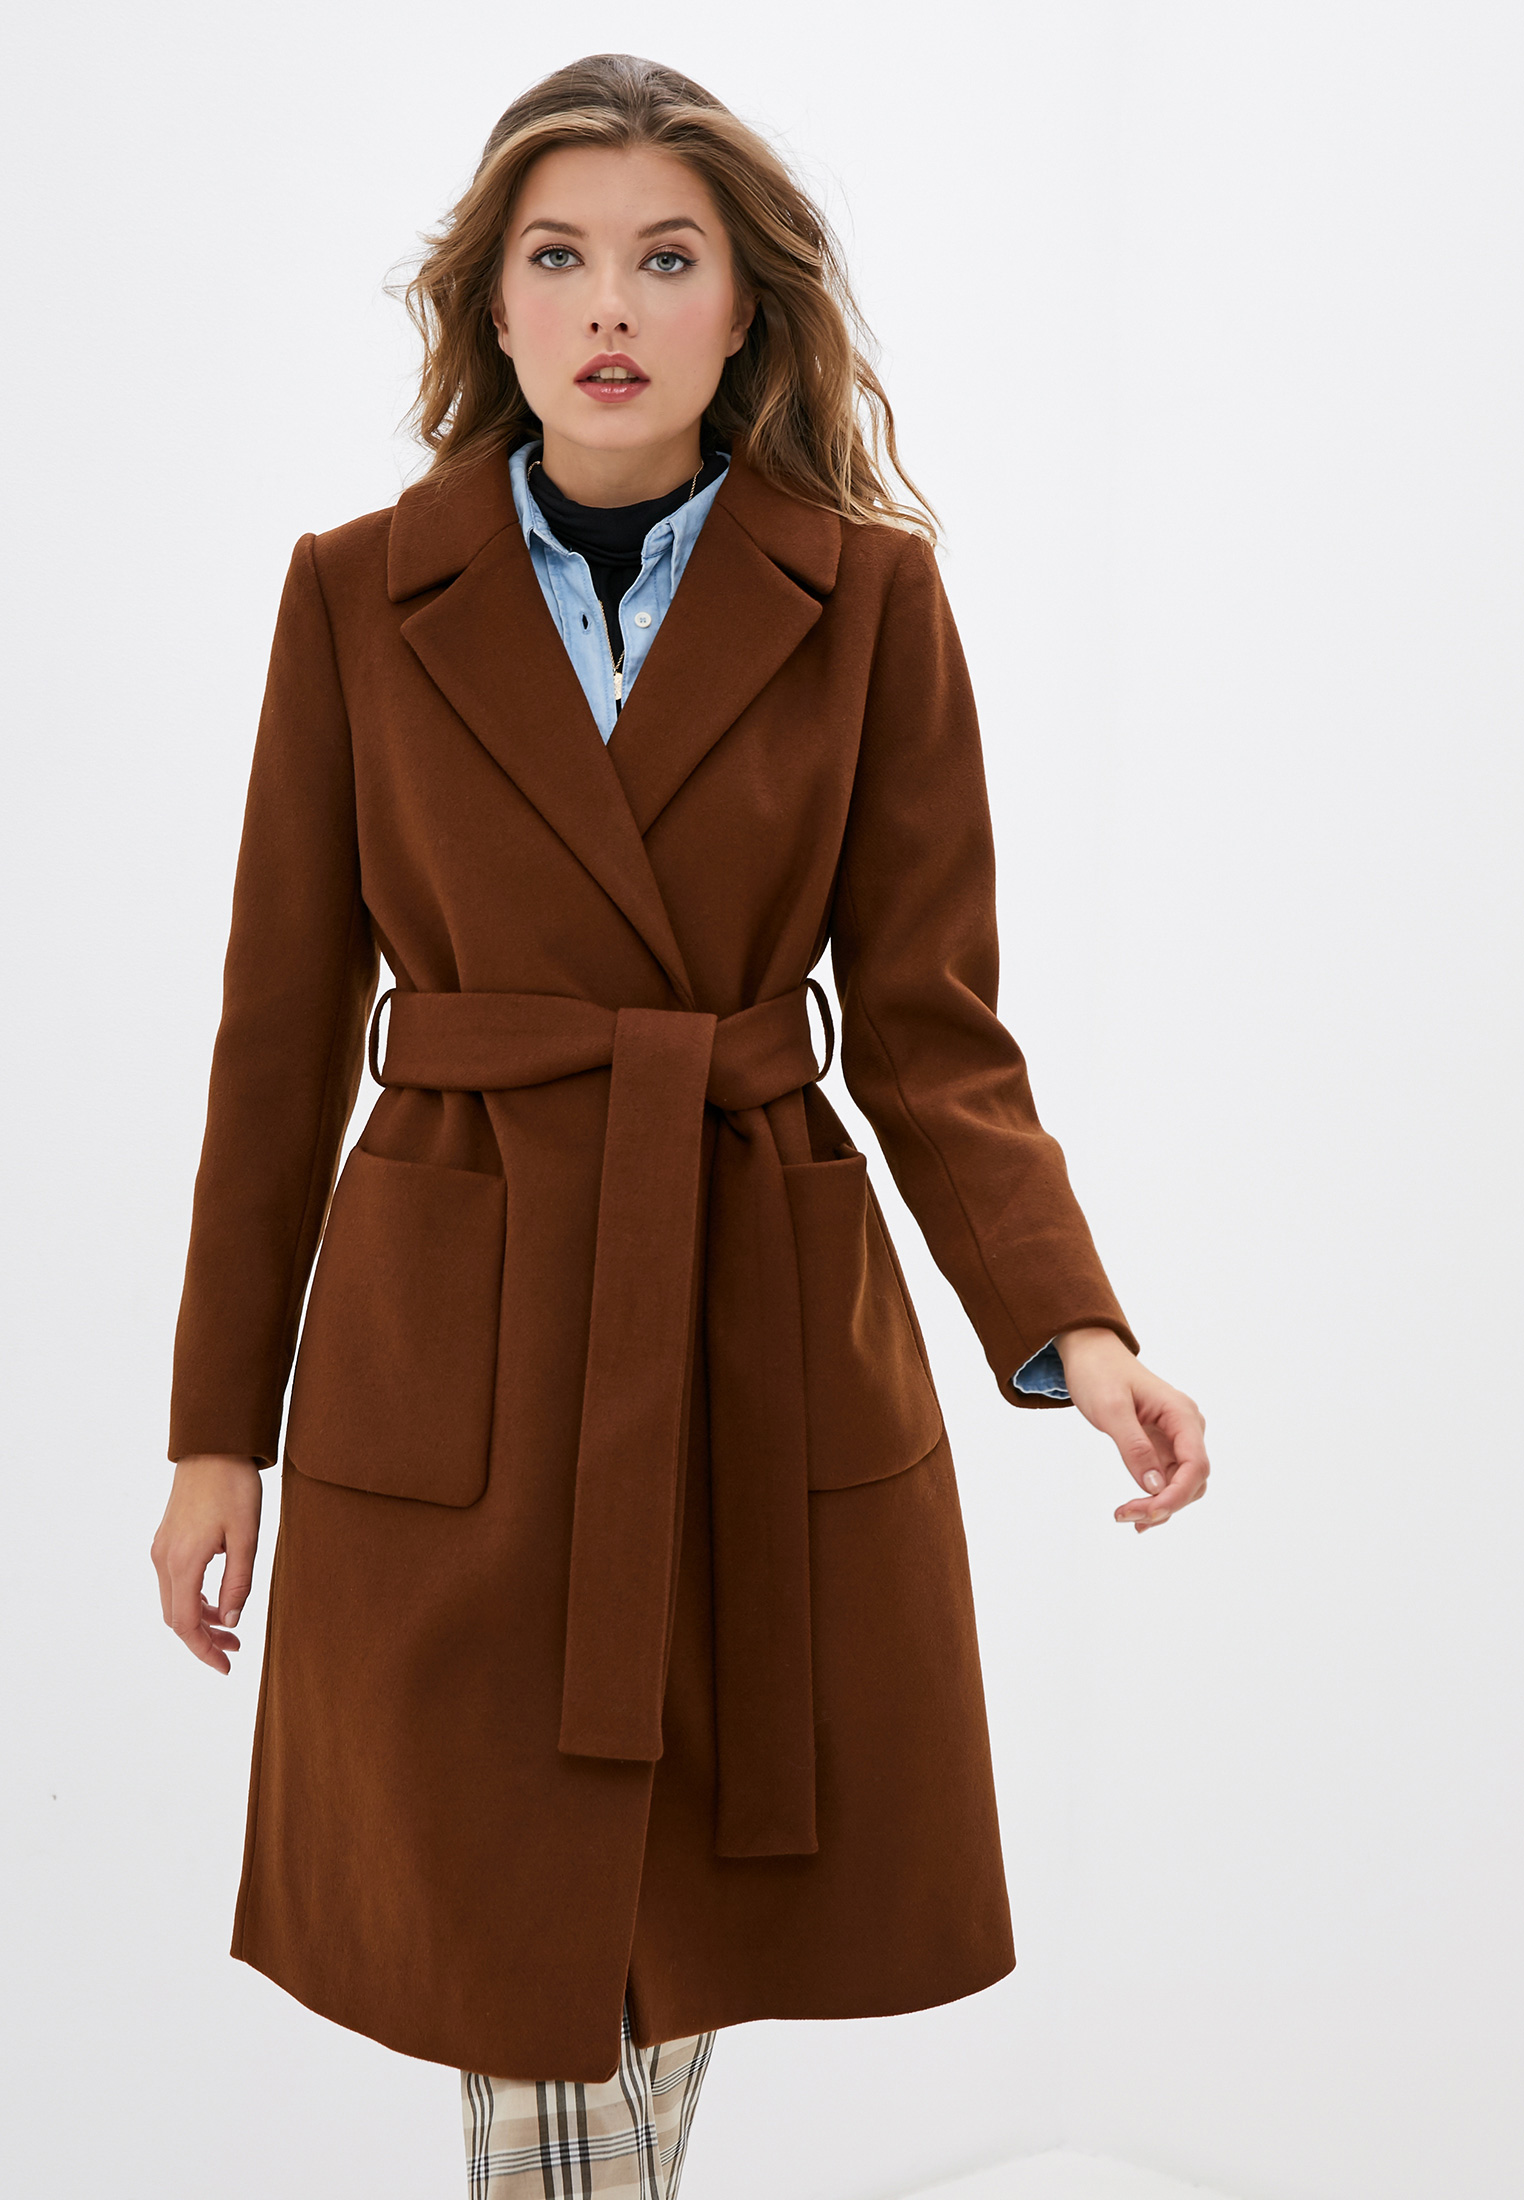 Купить коричневое пальто. Пальто Pimkie. Пальто collection Pimkie. Коричневое пальто женское. Пальто коричневого цвета.